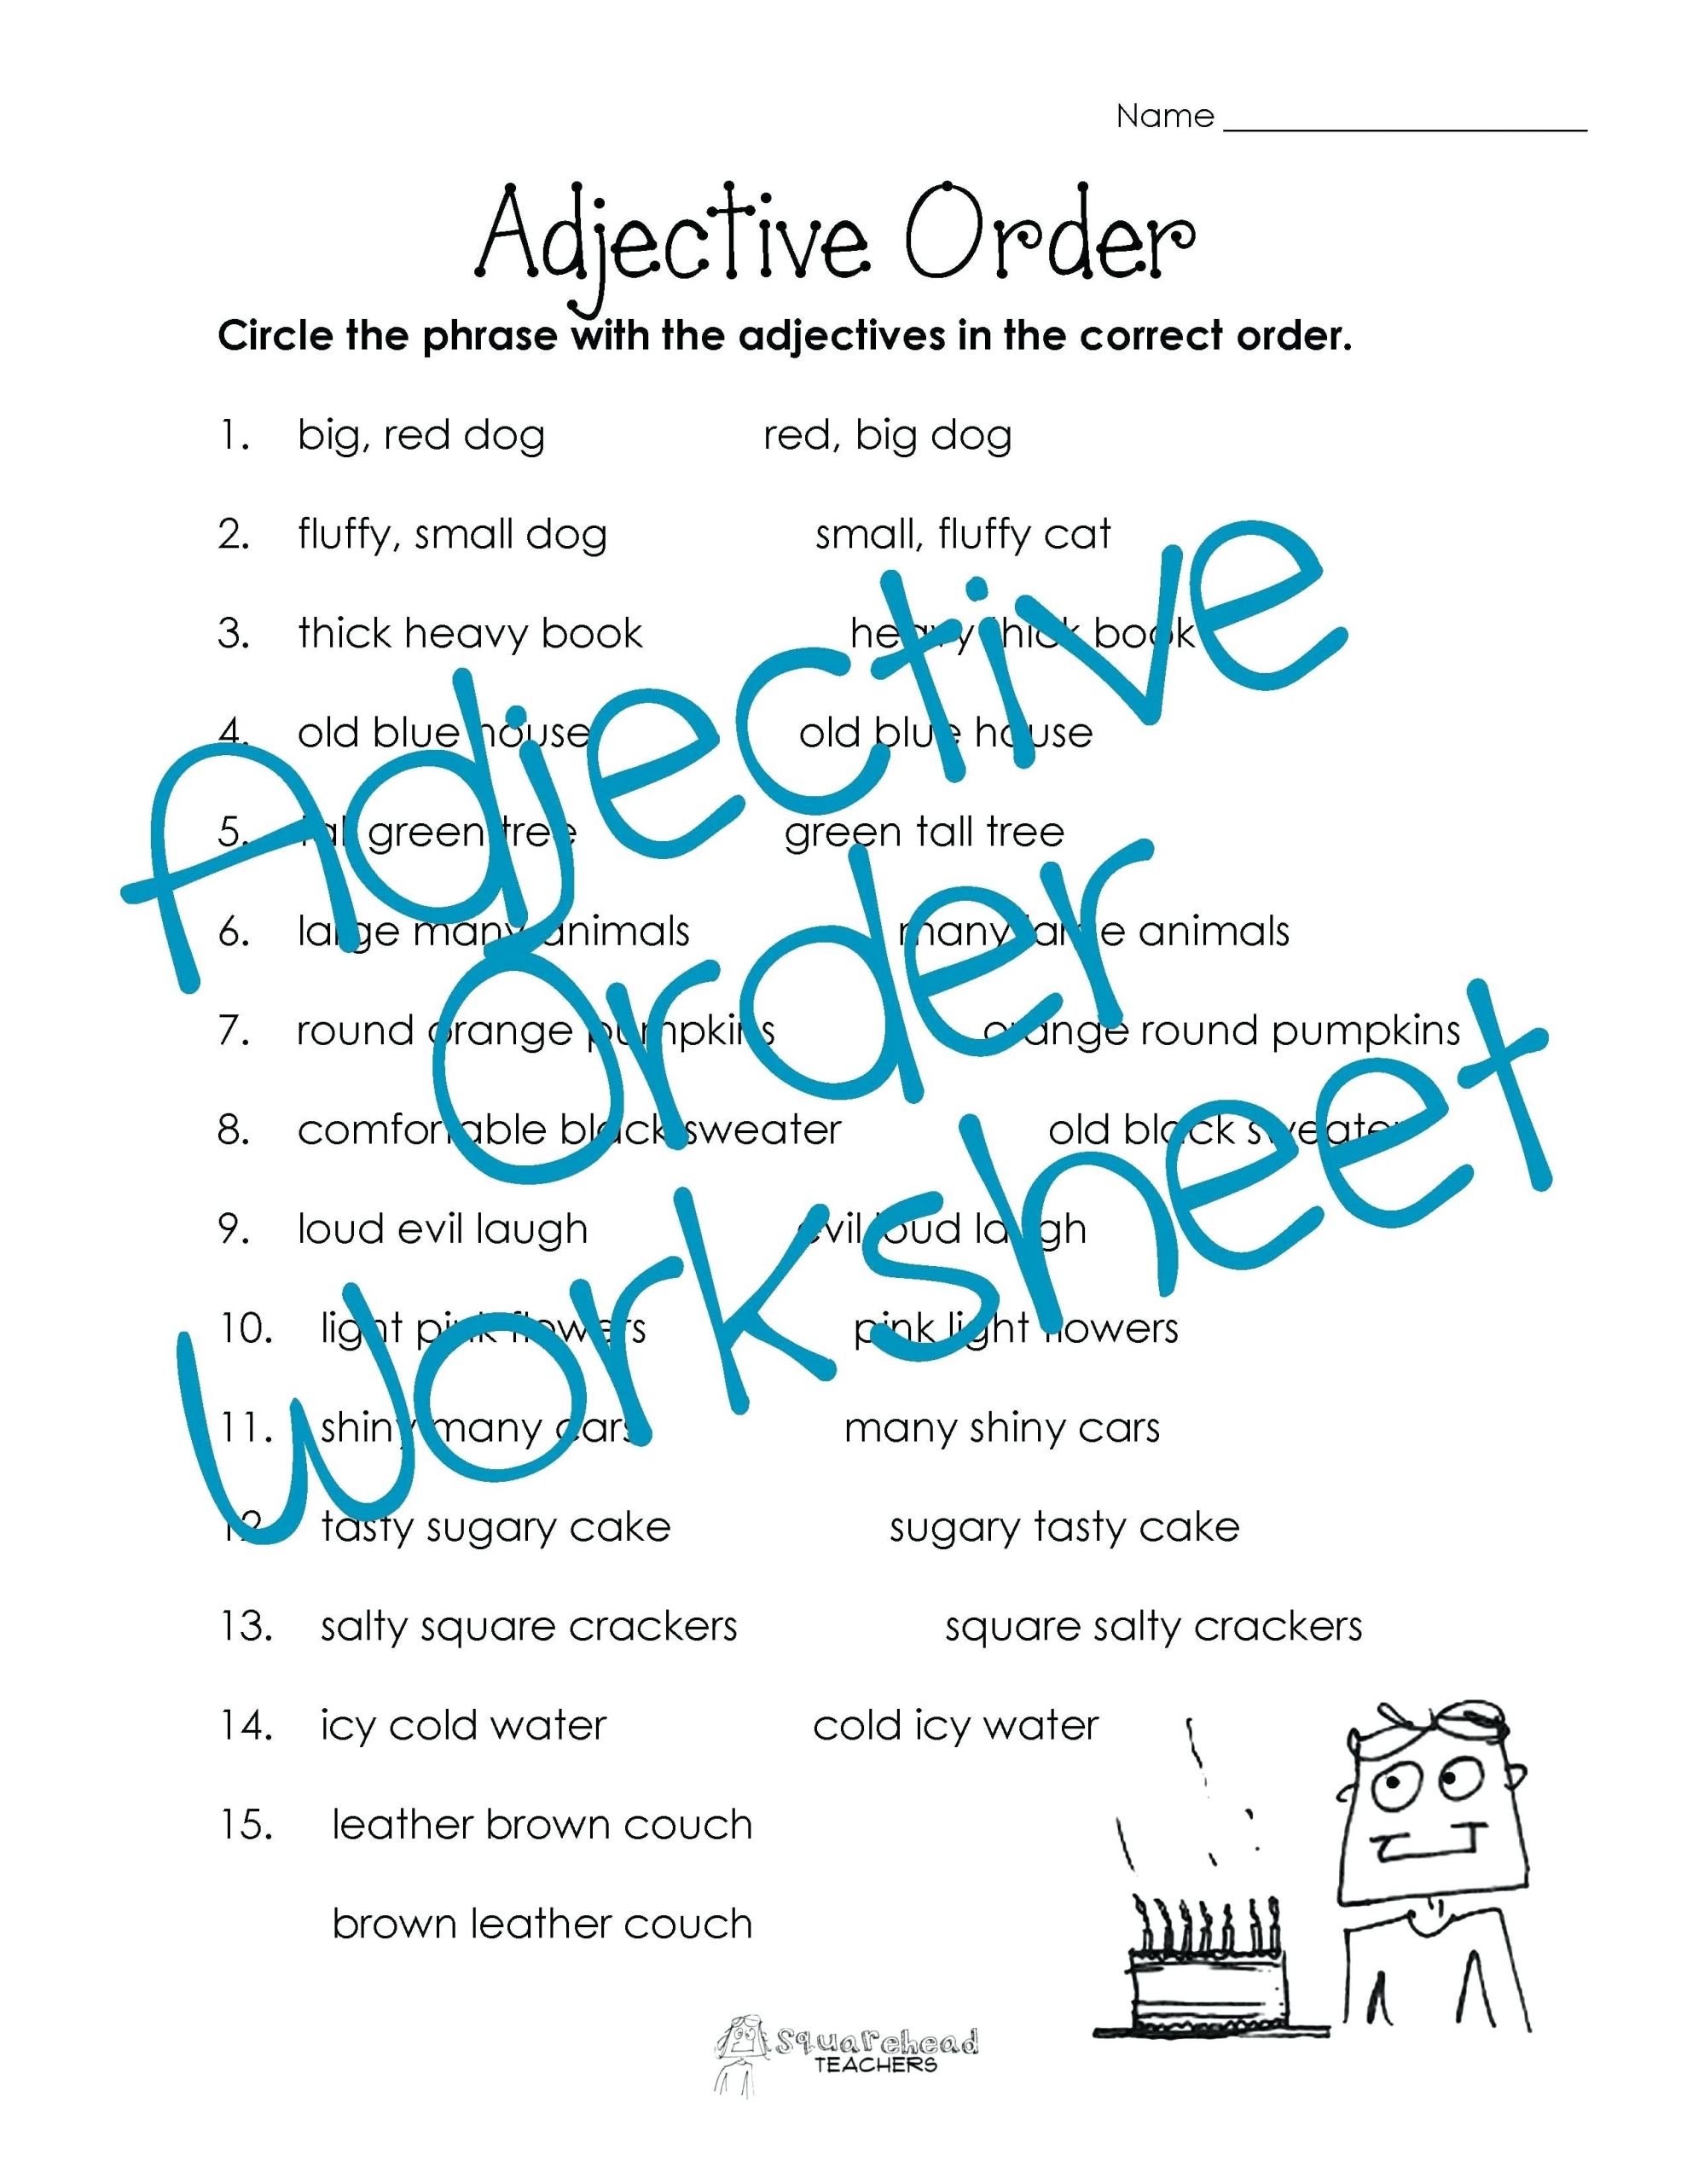 adjective order worksheet free teachers descriptive adjectives worksheets for grade 4 pdf